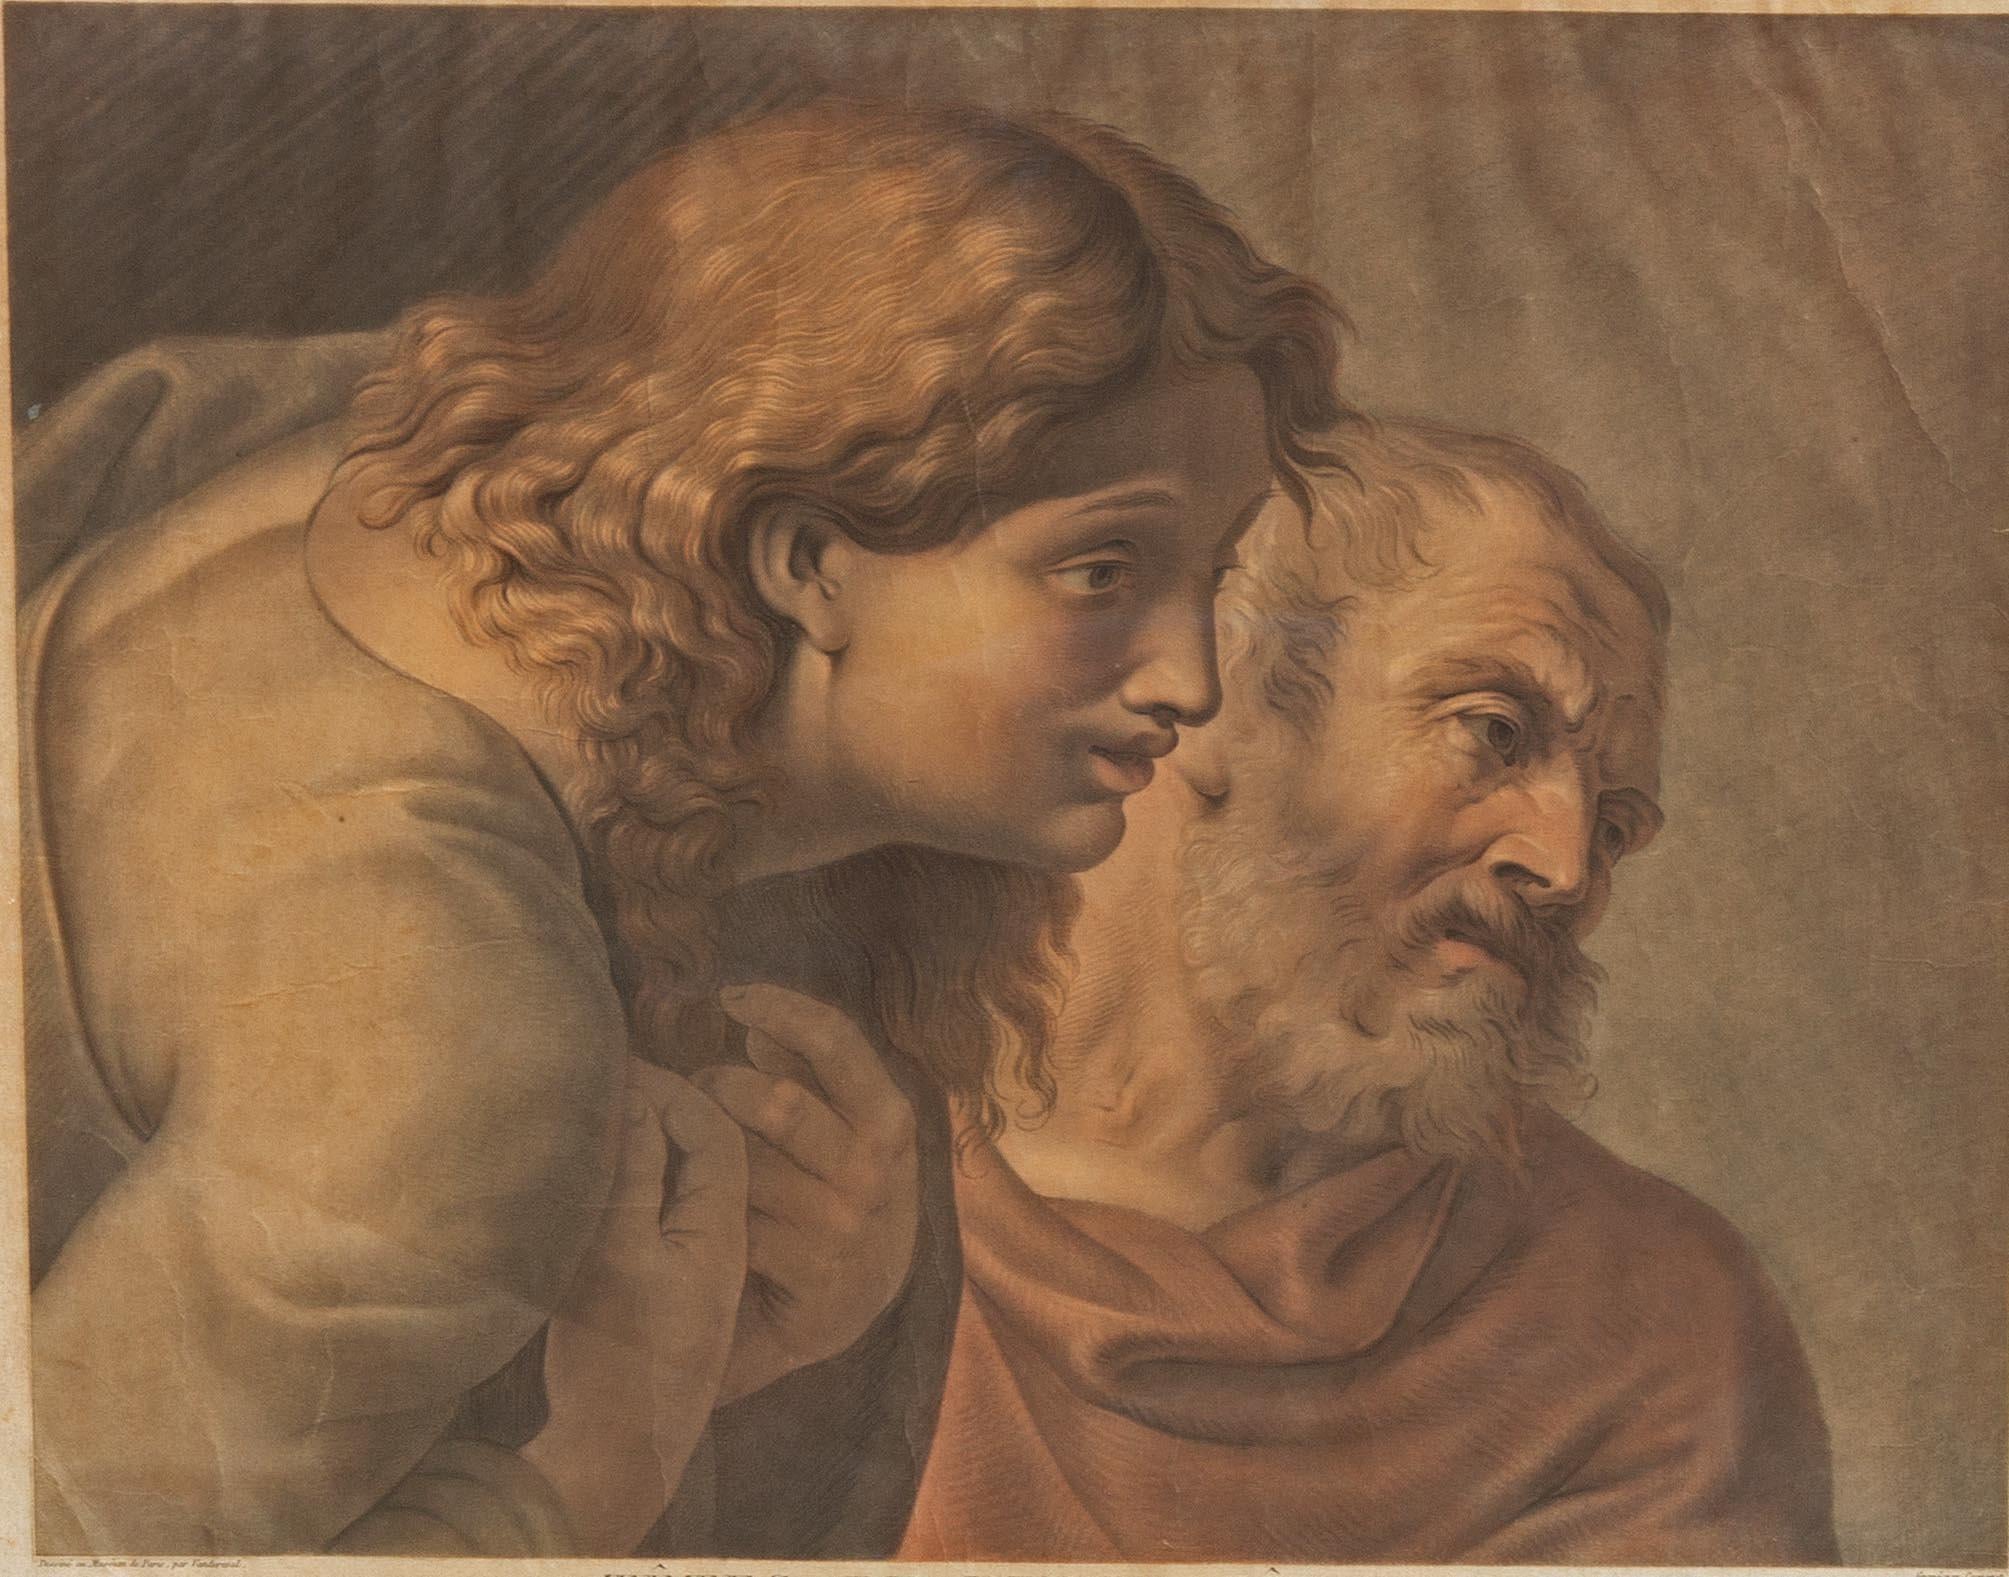 Impression du début du XIXe siècle sur papier vergé. Deux apôtres d'après Raphael (Raffaello Sanzio da Urbino). Bonne couleur. Quelques plis subtils sur le papier. Encadré. 